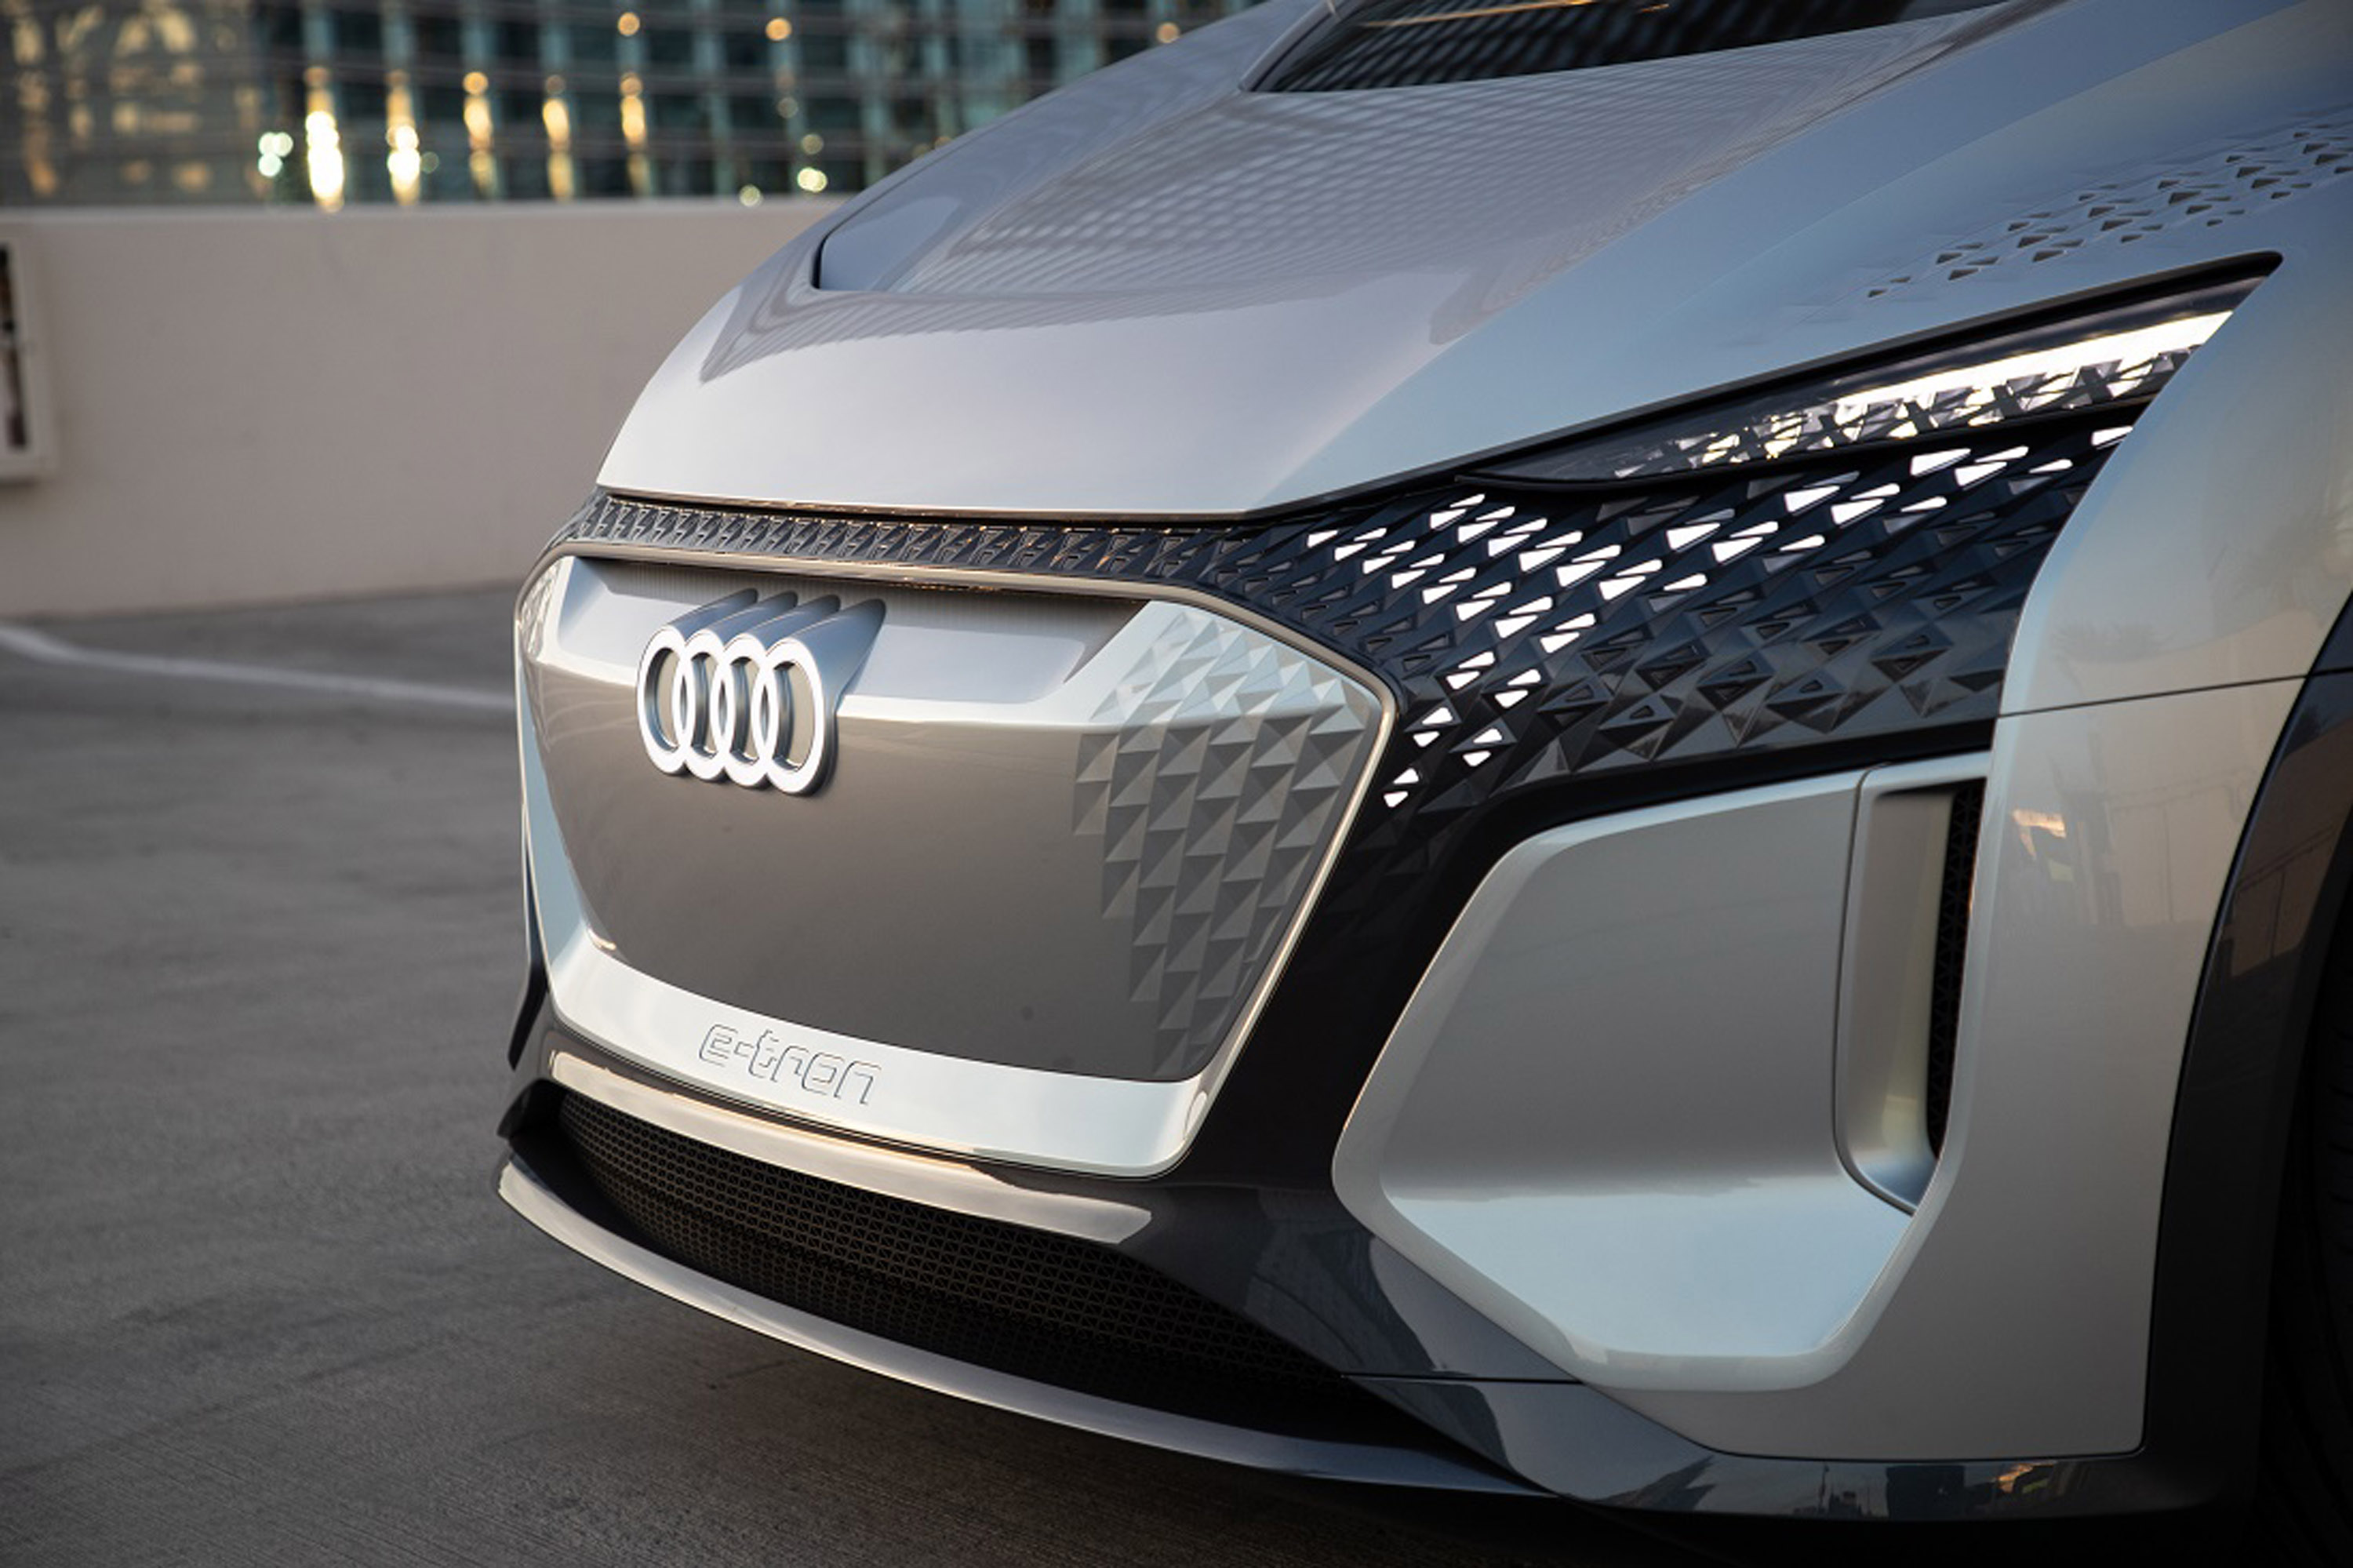 Одним из автомобилей, представленных на этом мероприятии, является Audi AI:ME, который представляет собой «третье жизненное пространство», а также наш дом и рабочее место. Пассажиры могут использовать систему отслеживания глаз, чтобы интуитивно общат